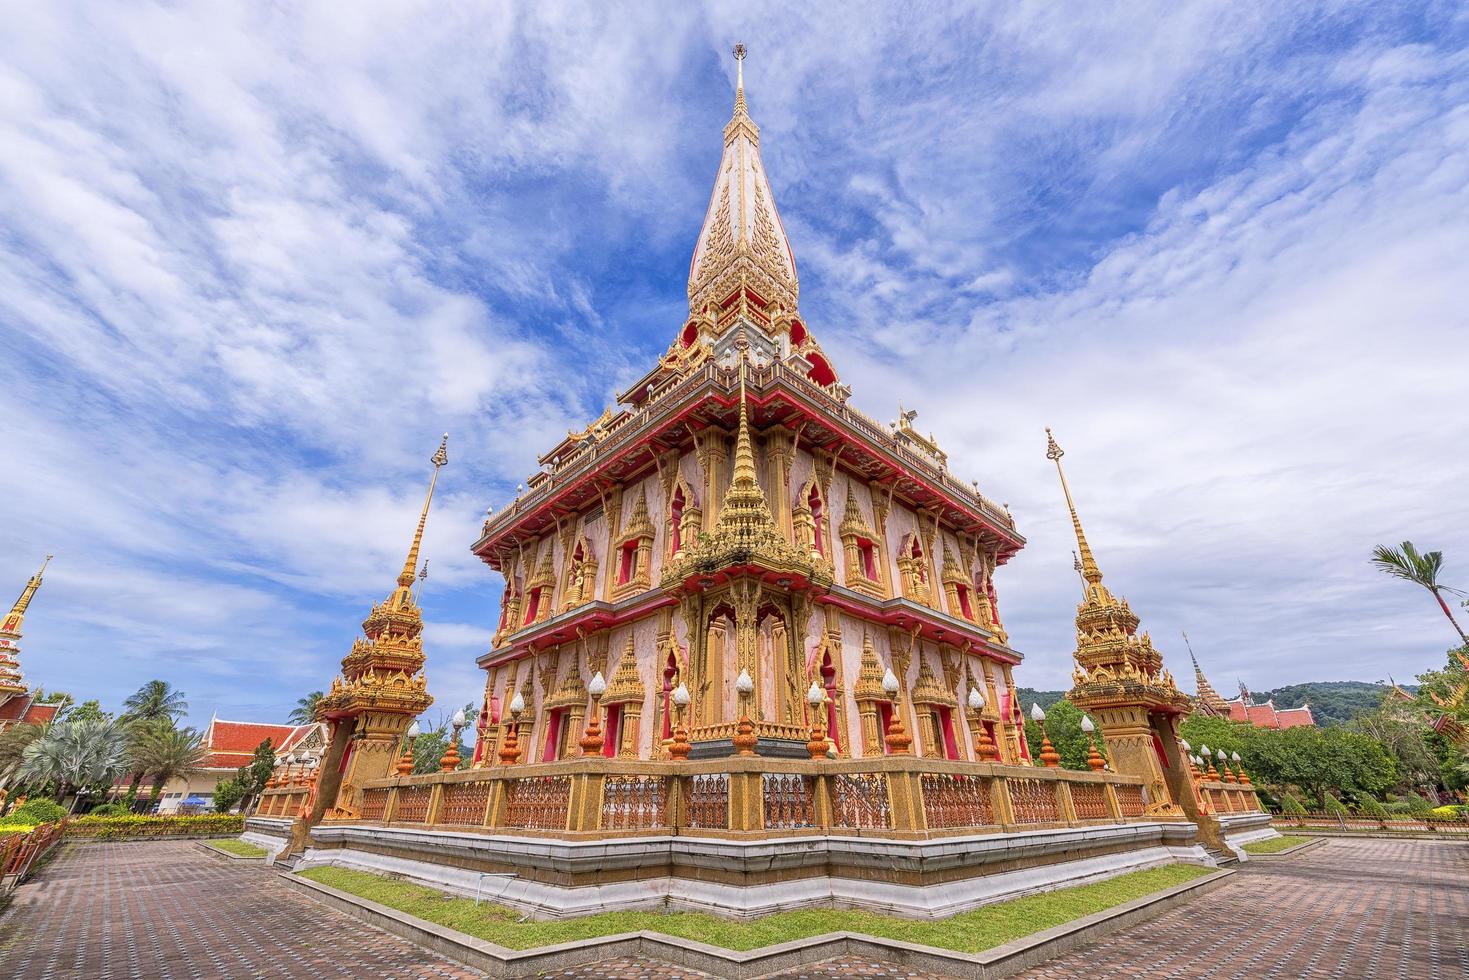 wat cha lange tempel in phuket, thailand foto